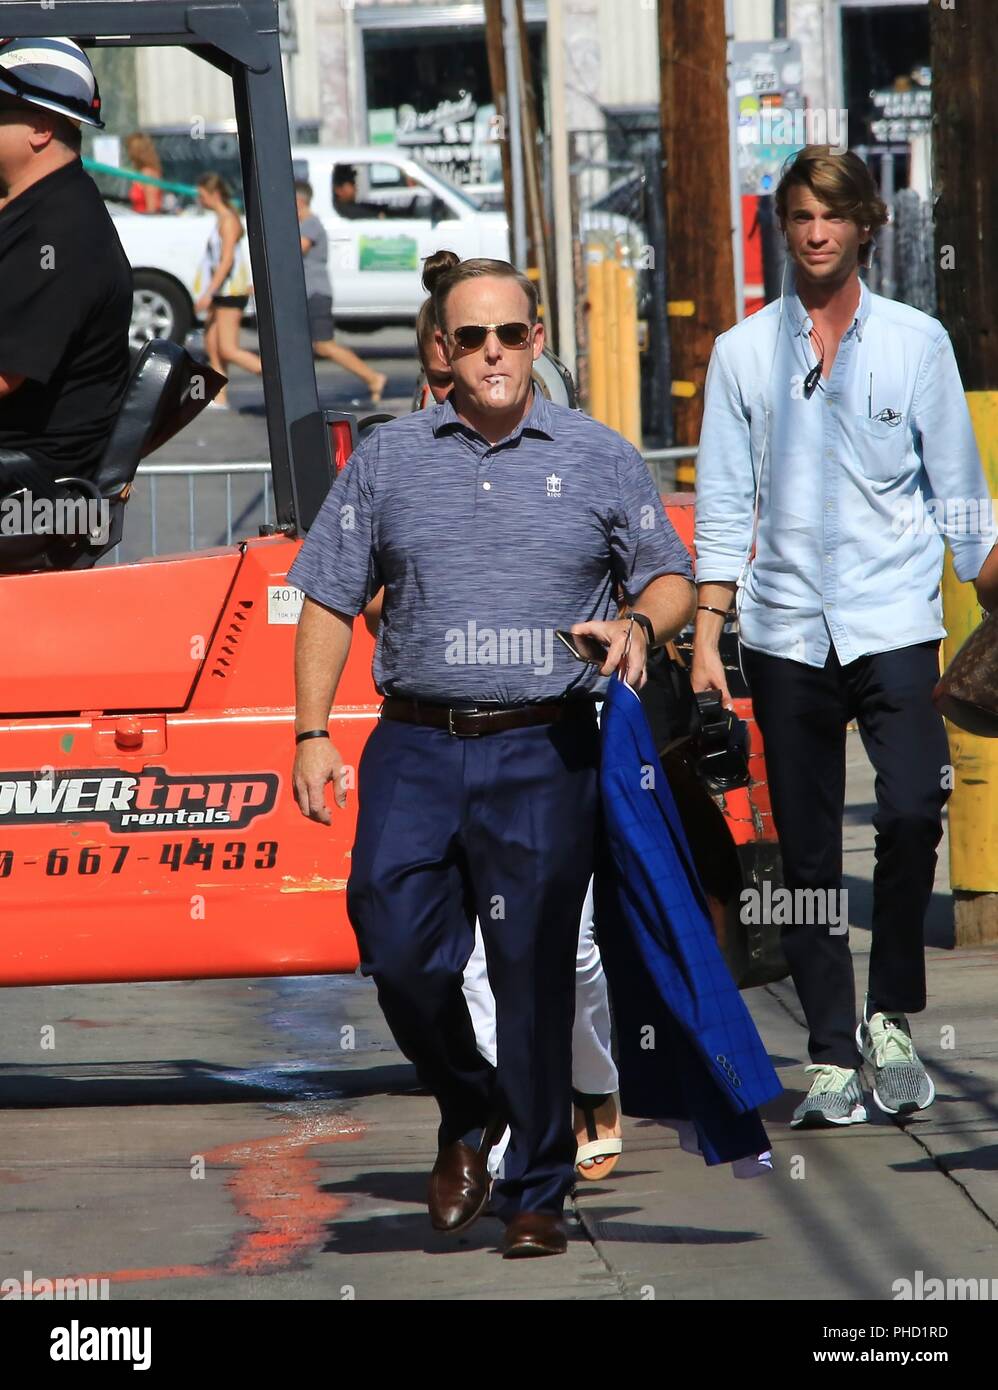 Les célébrités arrivent à ABC Studios pour figurer sur "Jimmy Kimmel Live !" En vedette : Sean Spicer Où : Hollywood, California, United States Quand : 31 juillet 2018 Source : WENN.com Banque D'Images